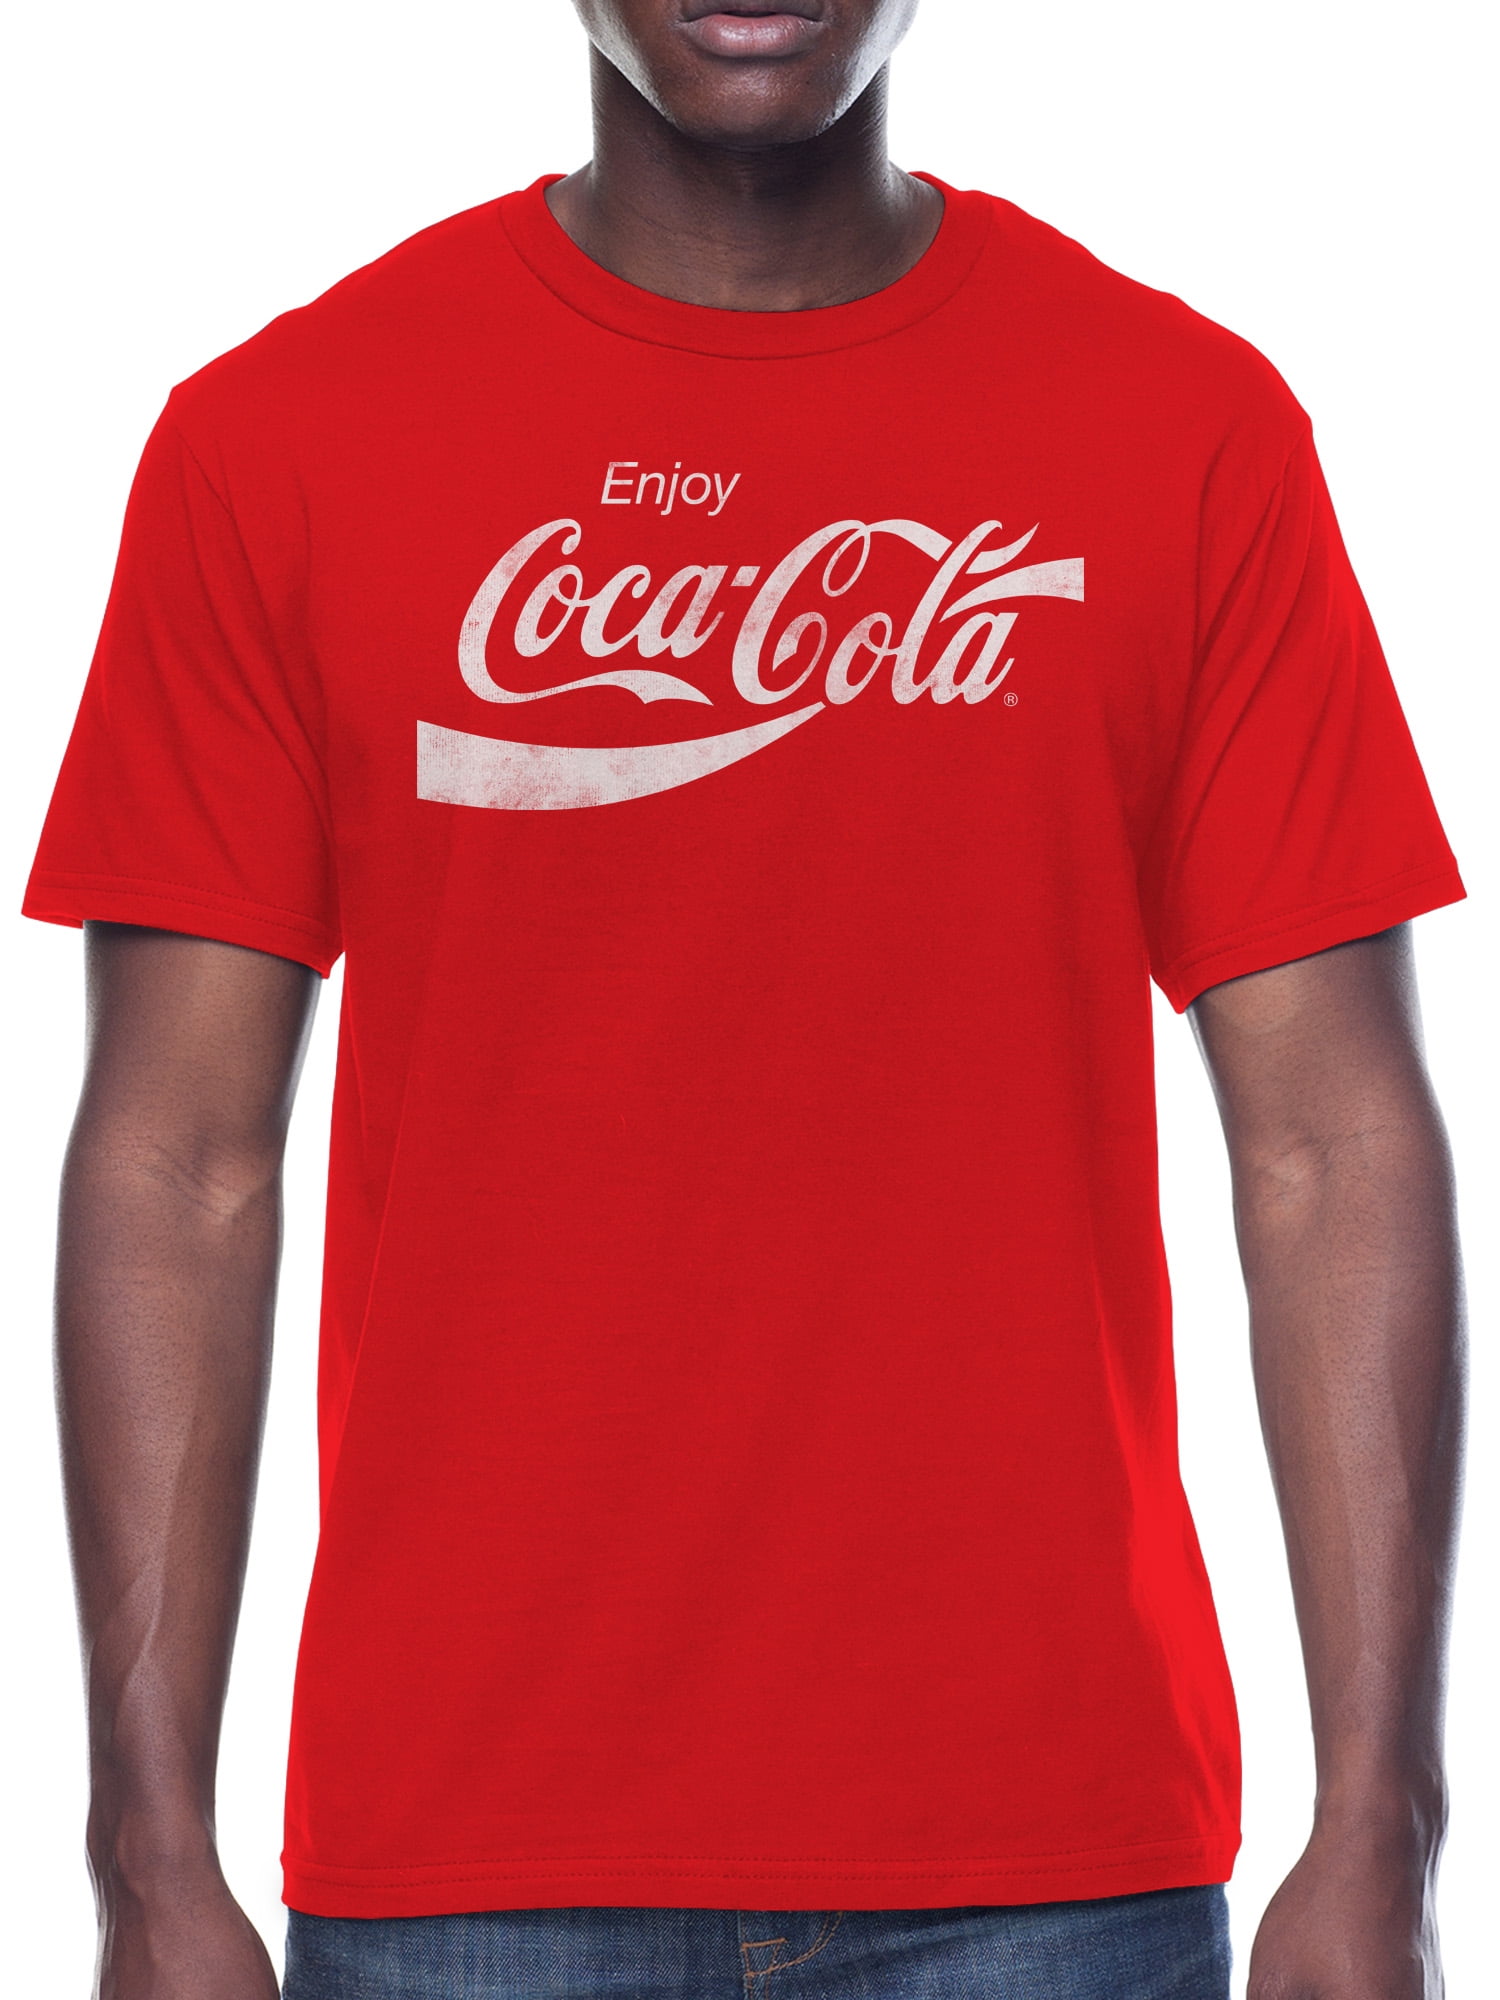 Sistematski kikiriki Pejzaž coca cola t shirt Ponižite Neugodnosti vrišti